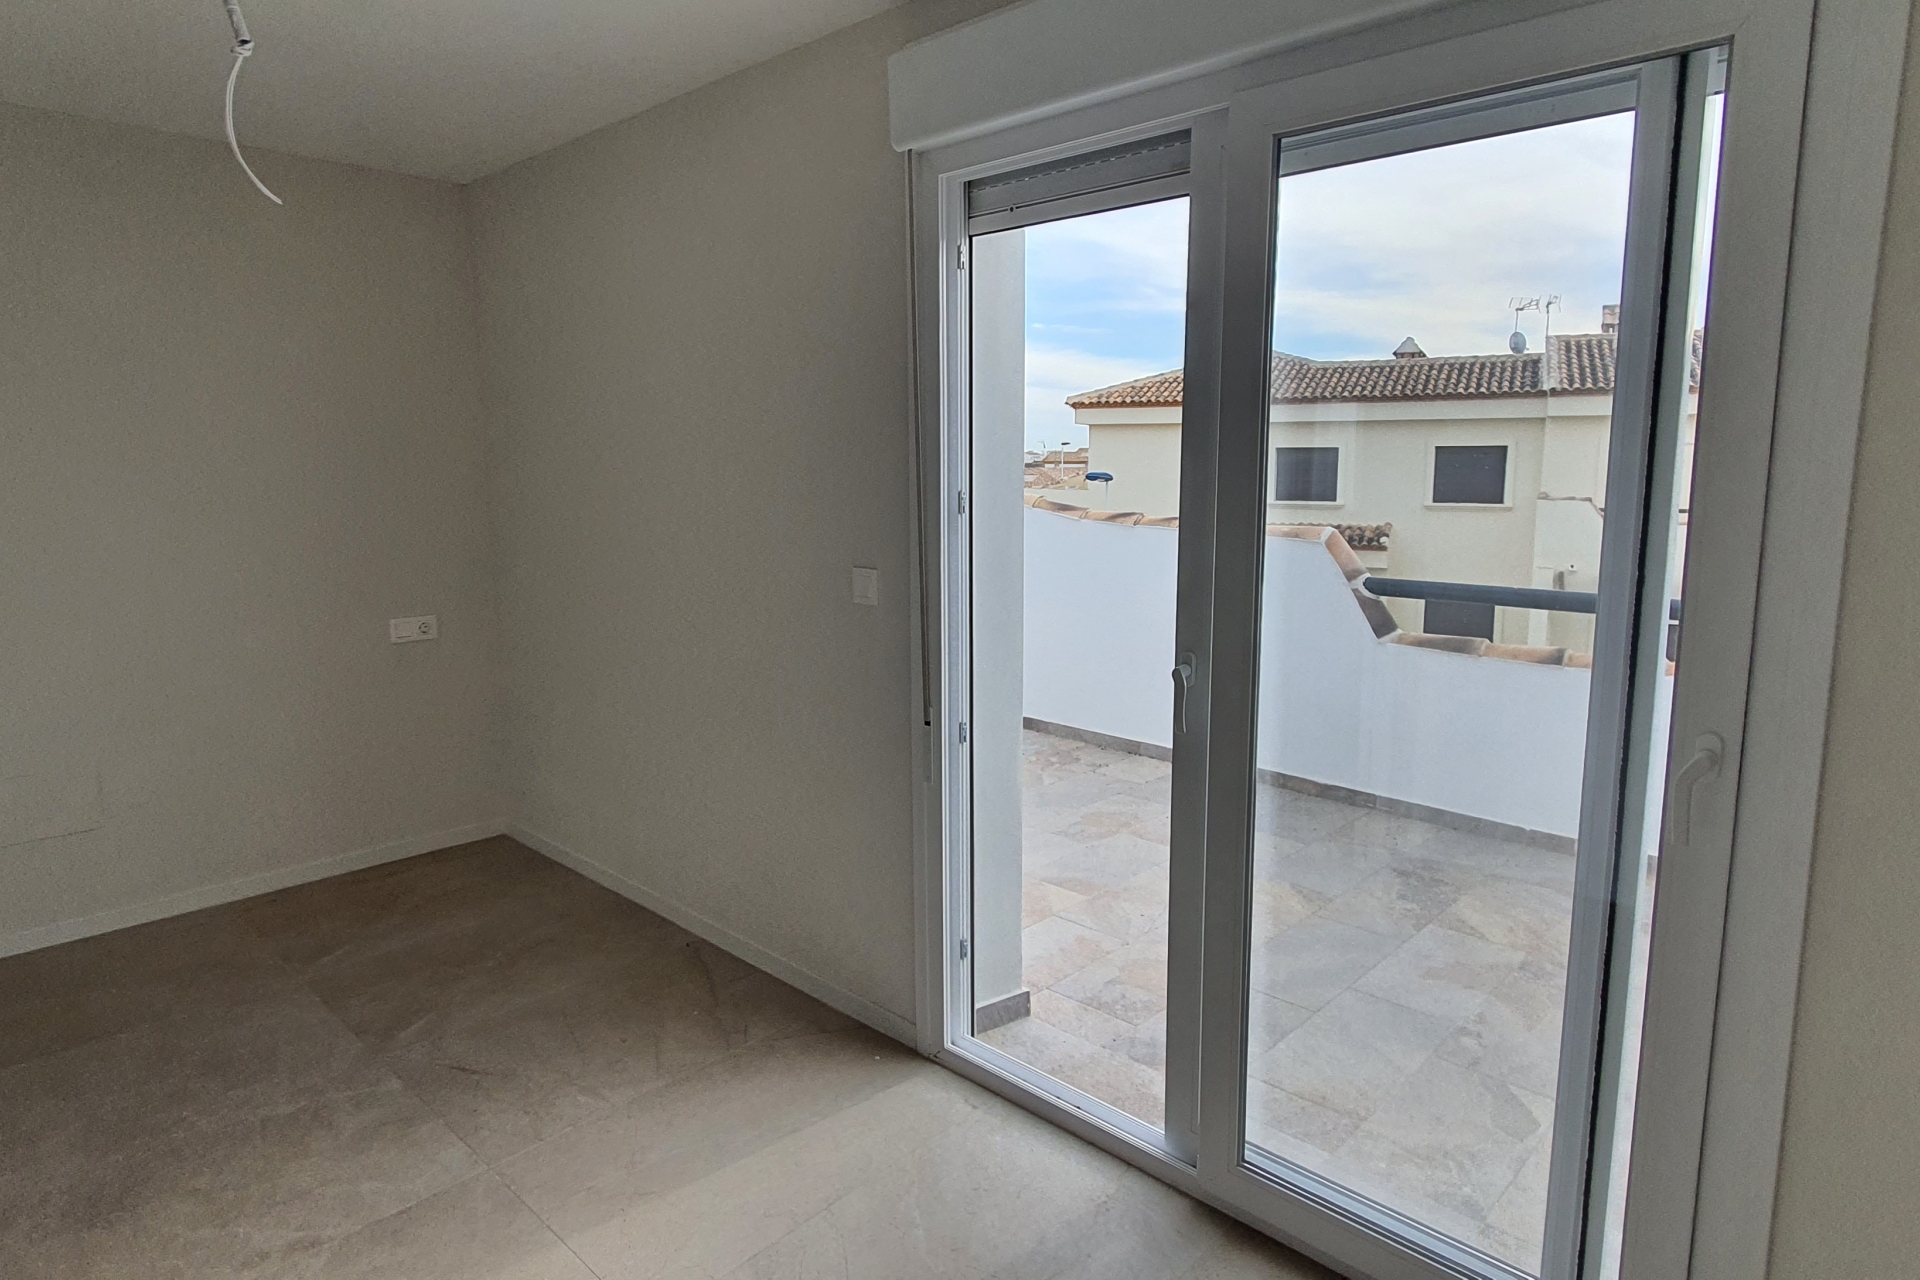 Property Sold - Duplex for sale - San Pedro del Pinatar